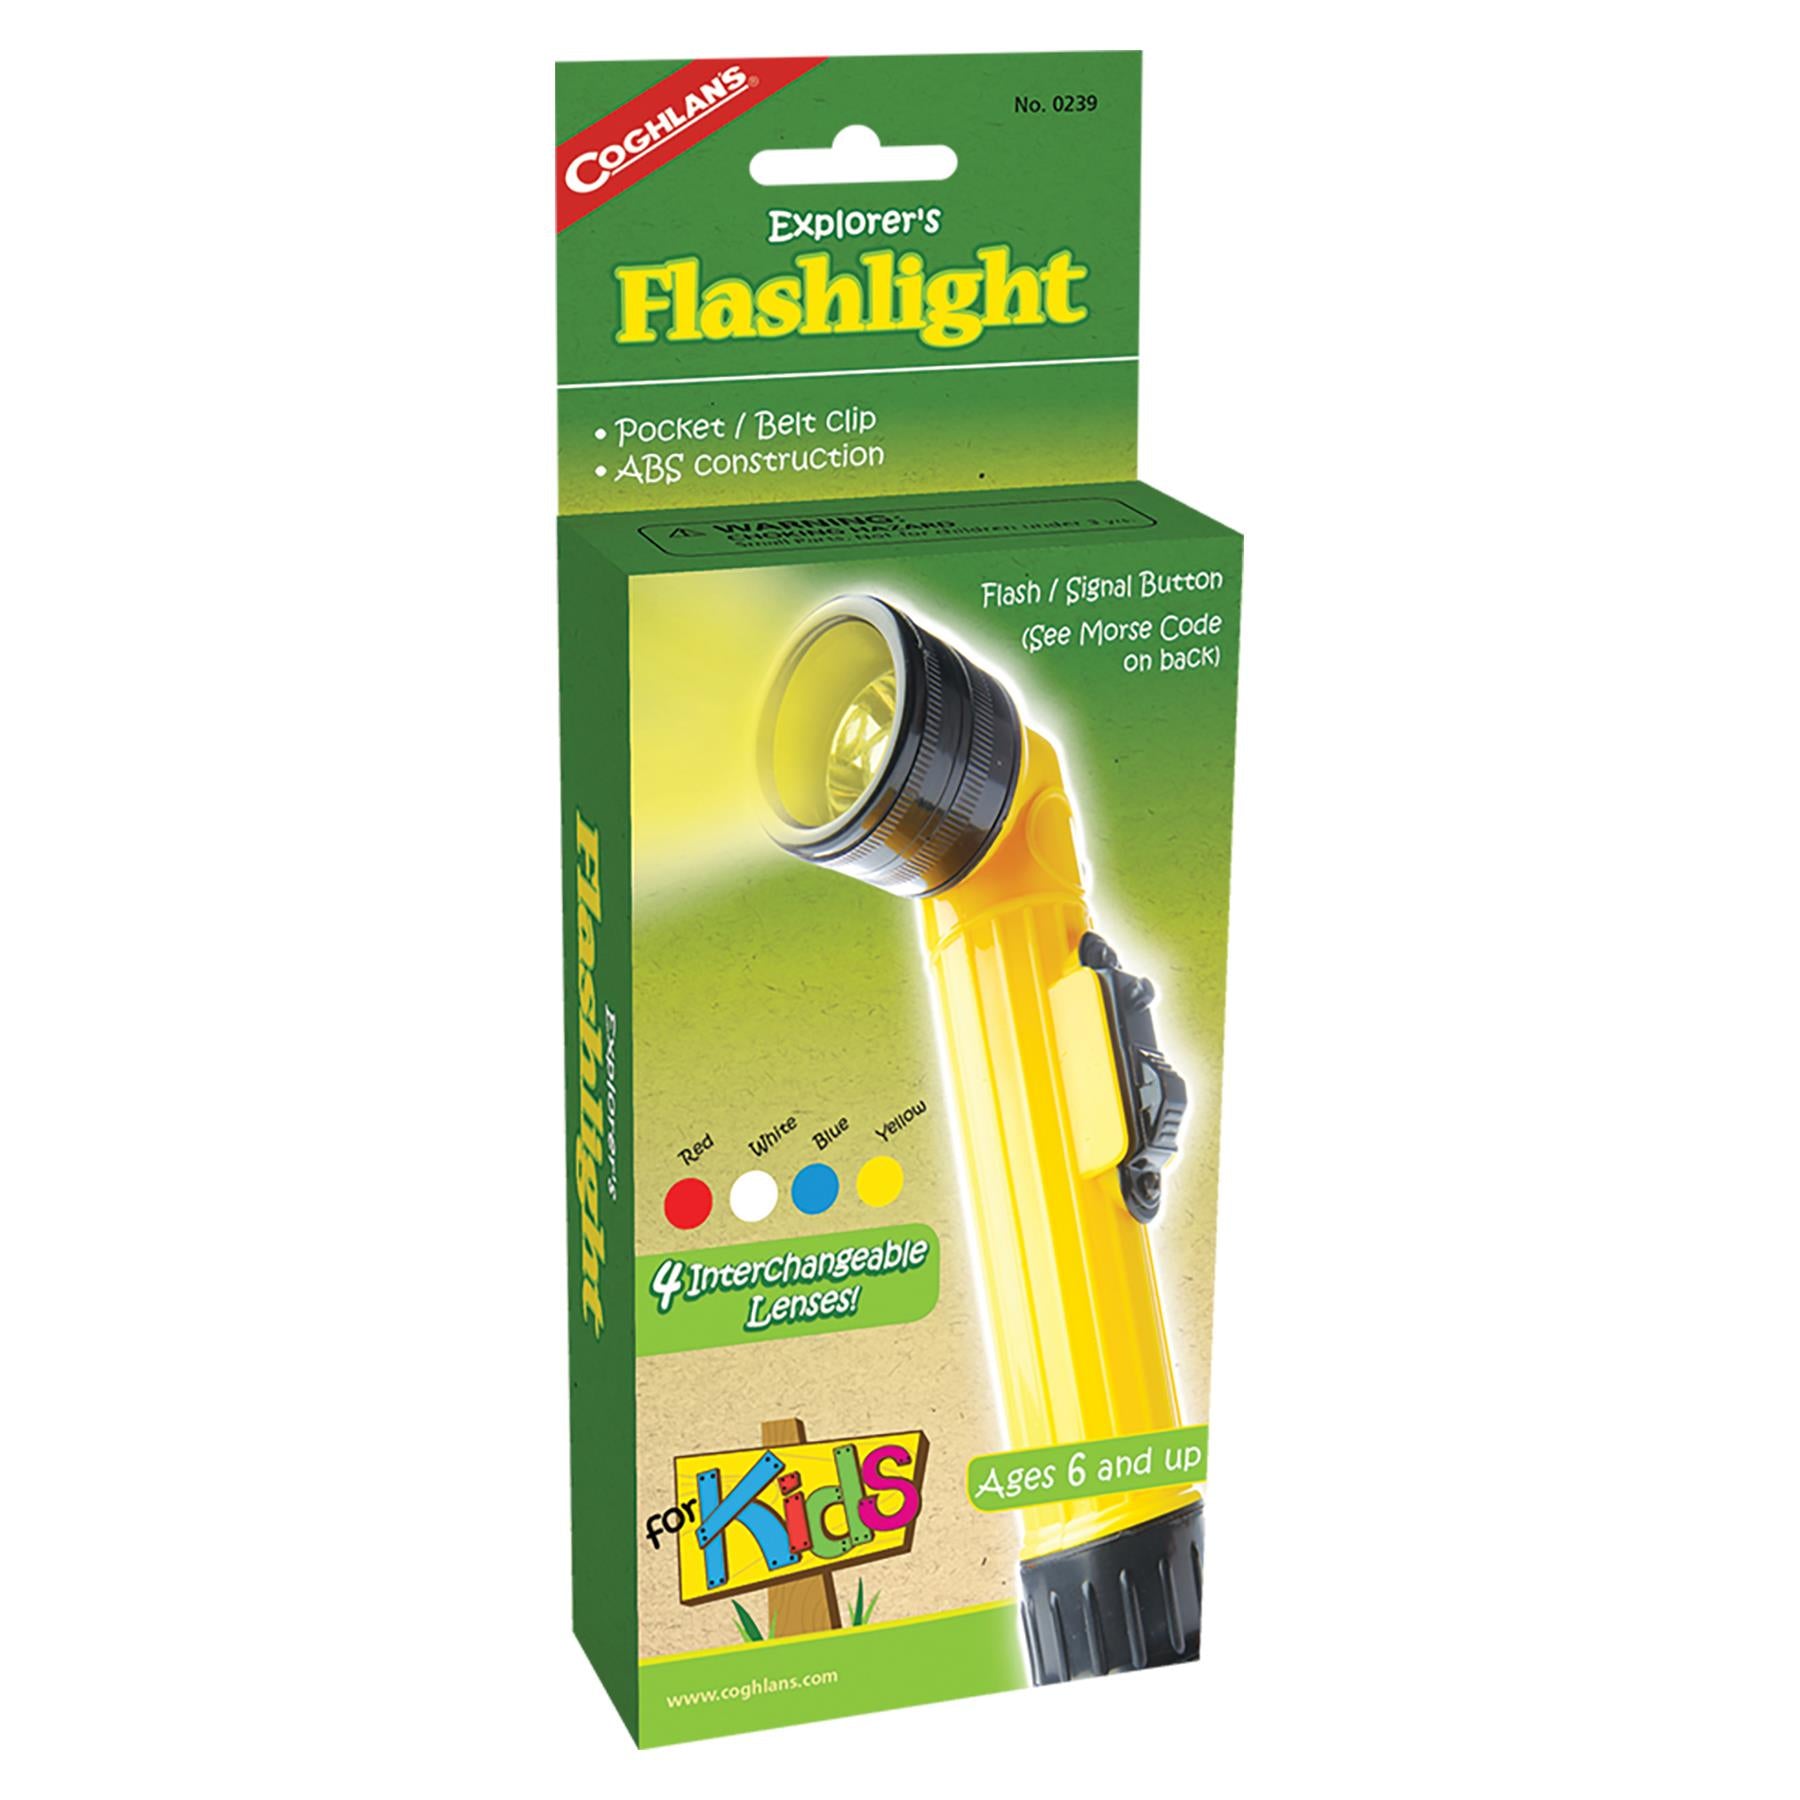 Flashlight for Kids